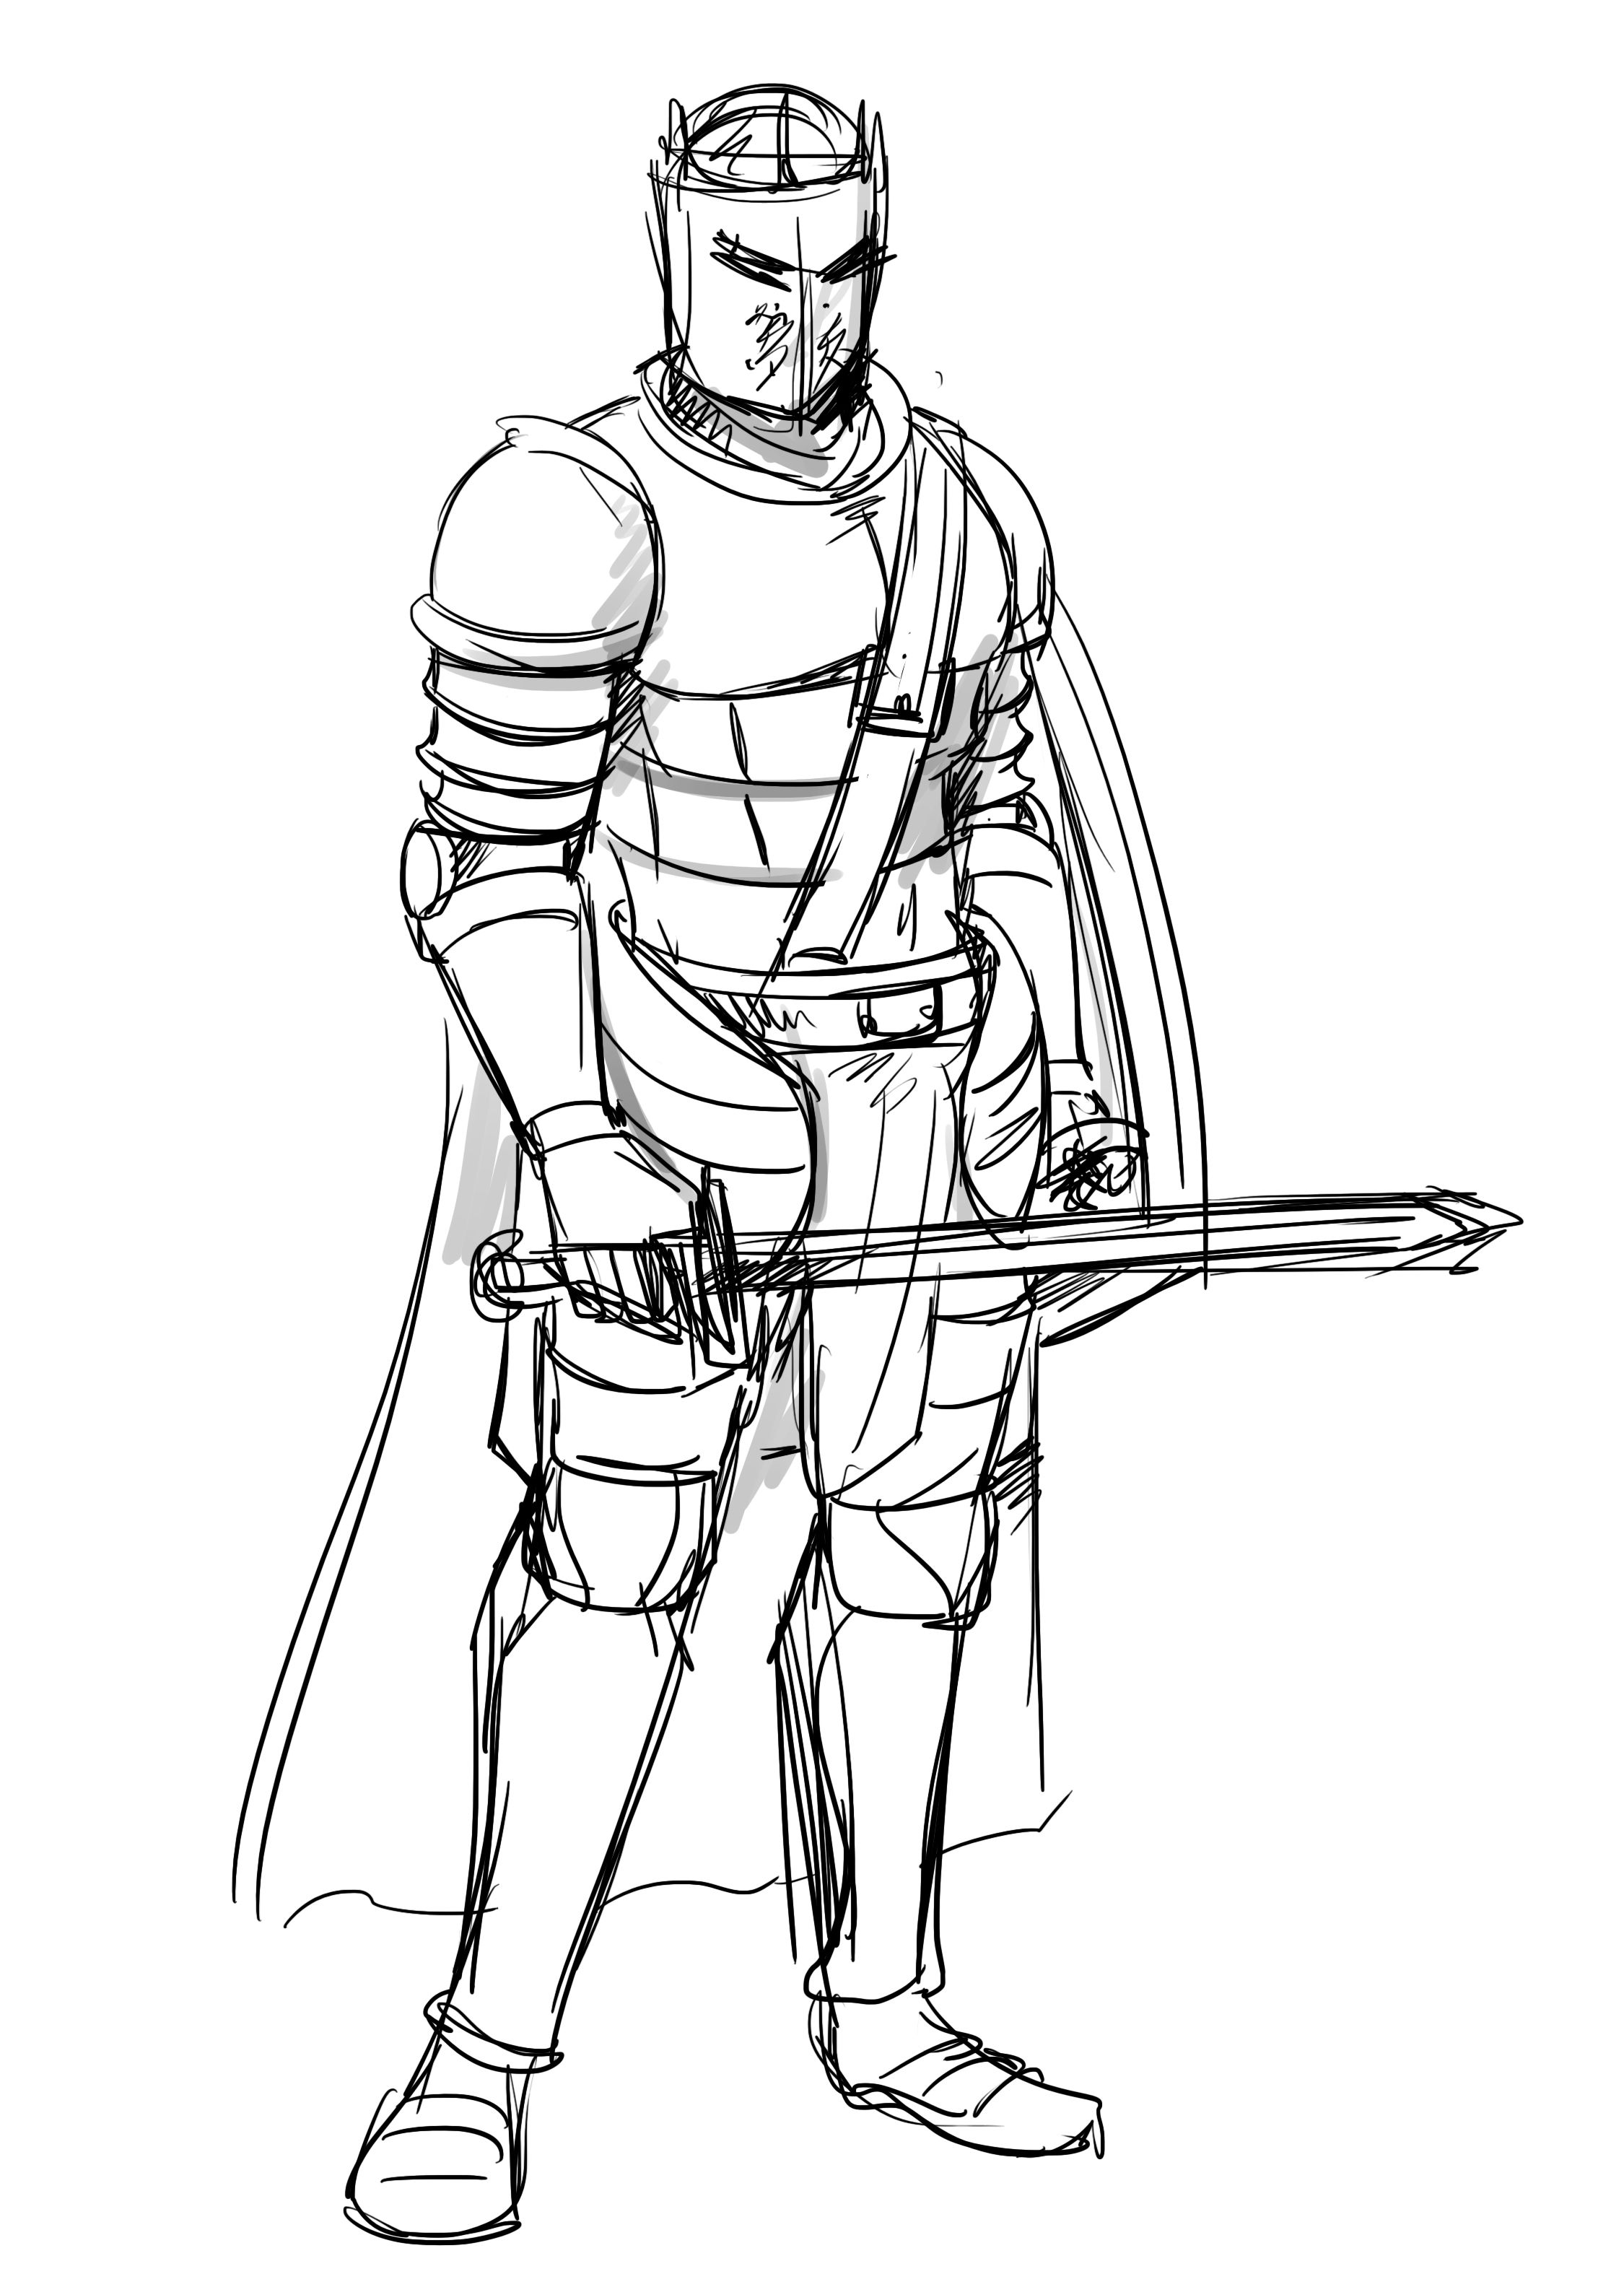 Como desenhar um cavaleiro